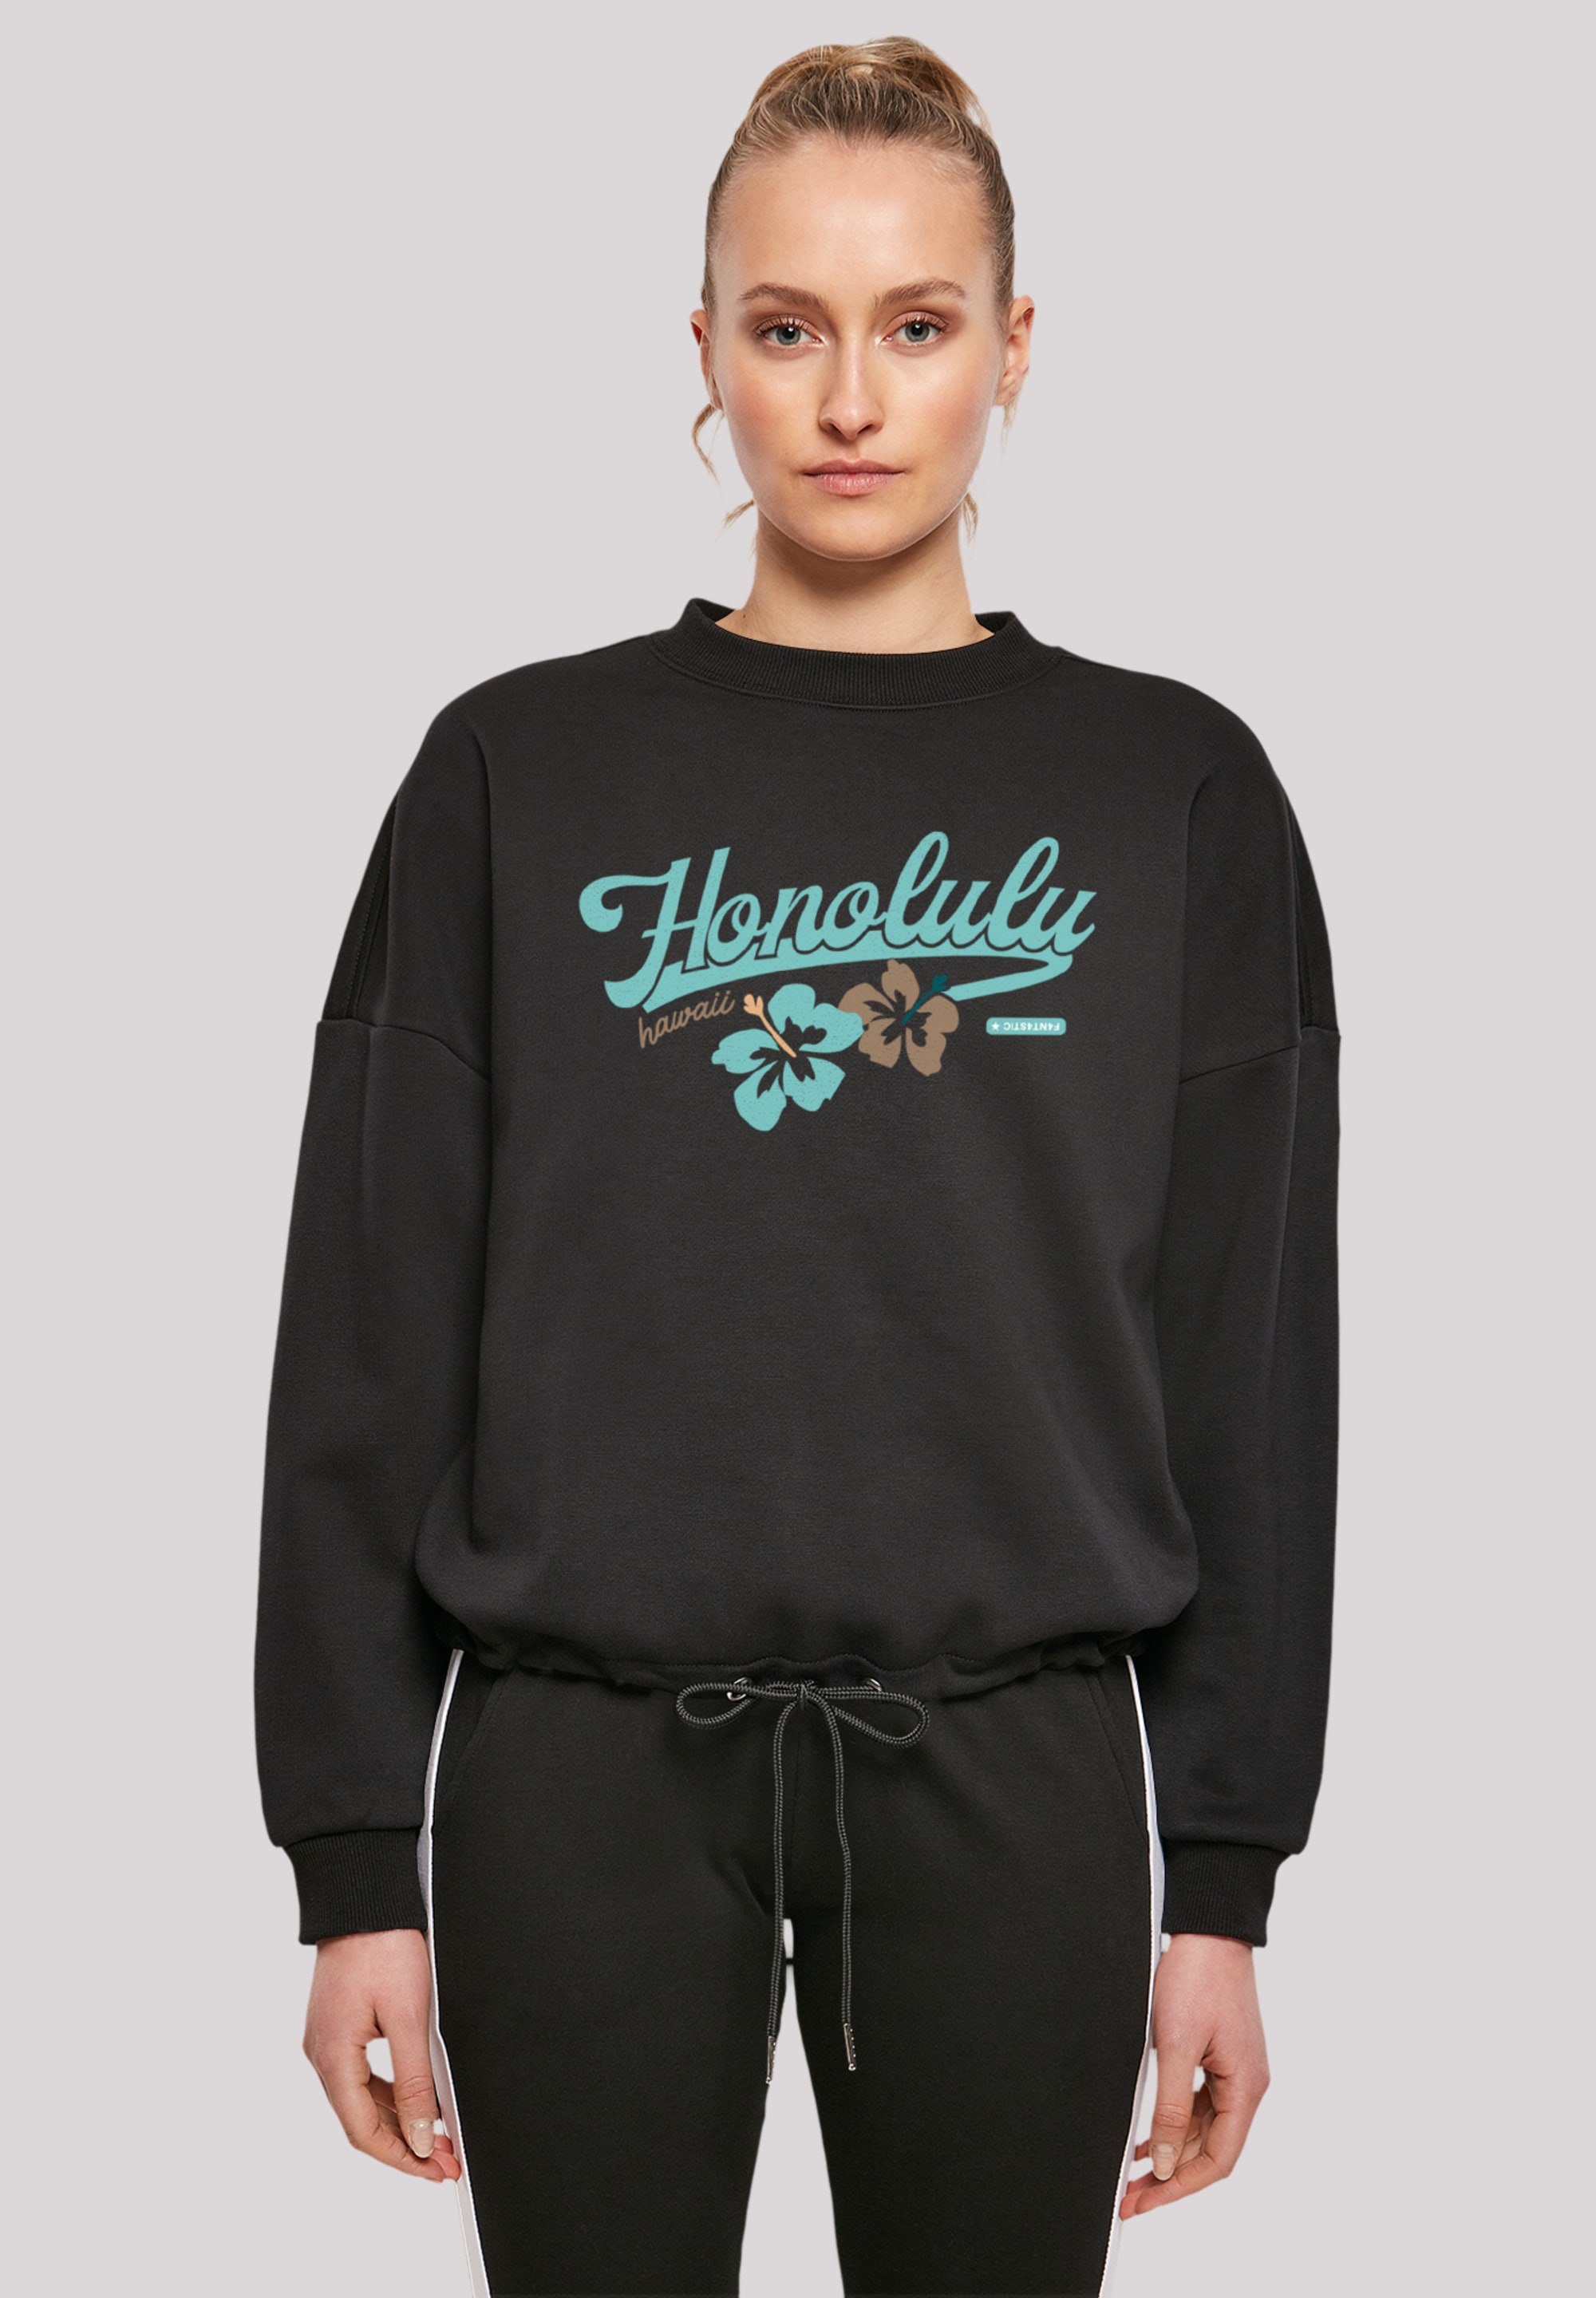 »Honolulu«, F4NT4STIC shoppen Sweatshirt Print